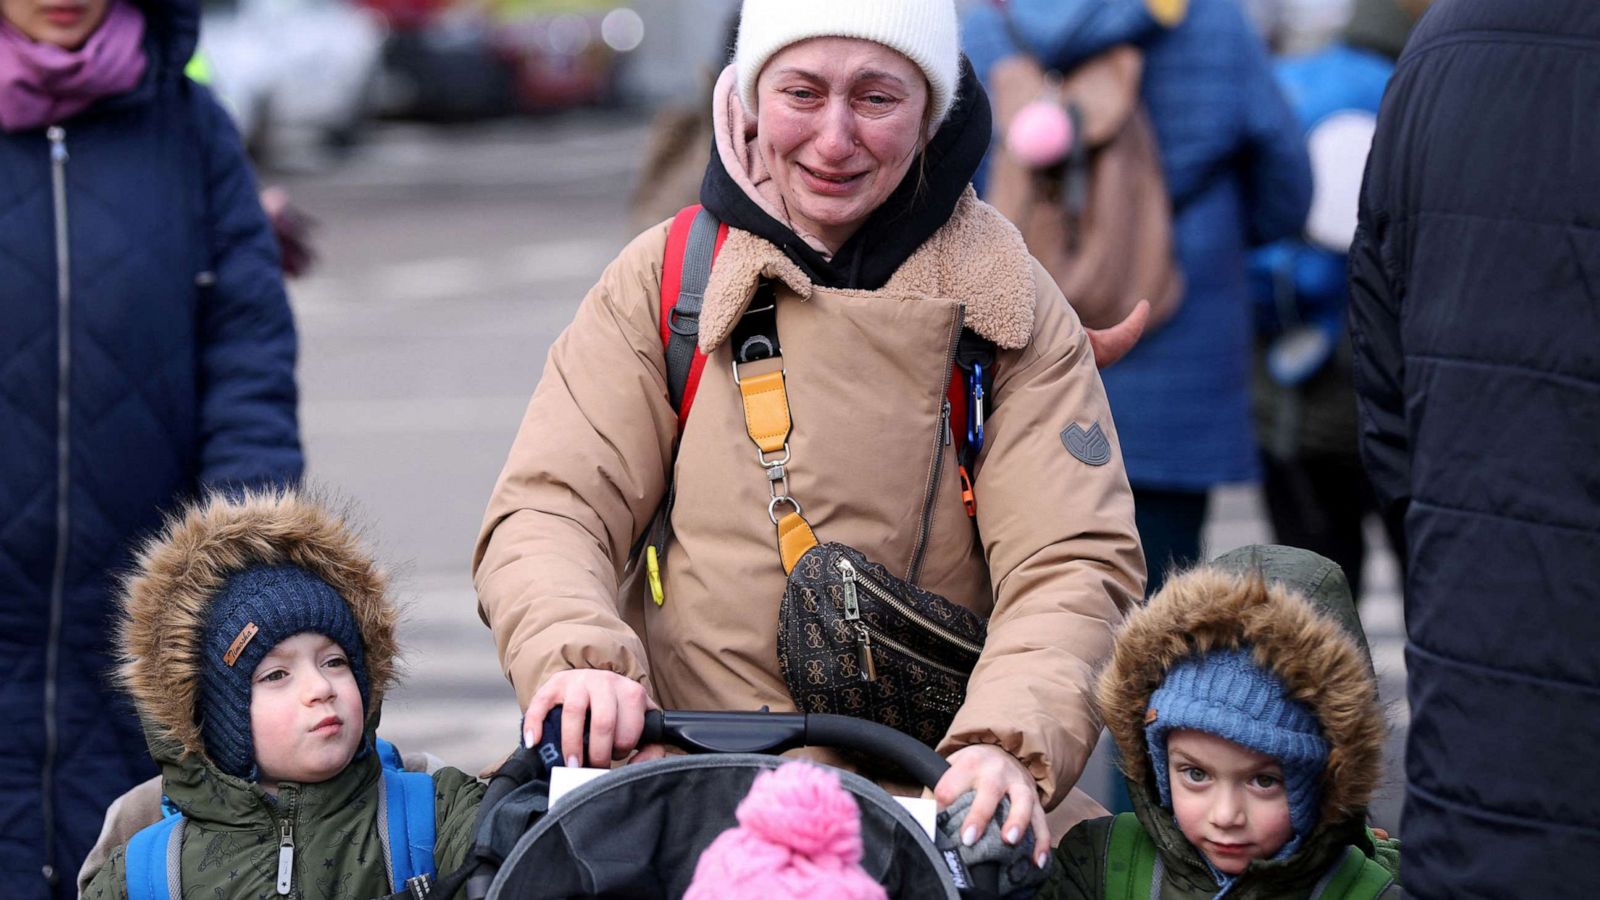 Ukrainian refugees may face humanitarian crisis, advocates say - ABC News